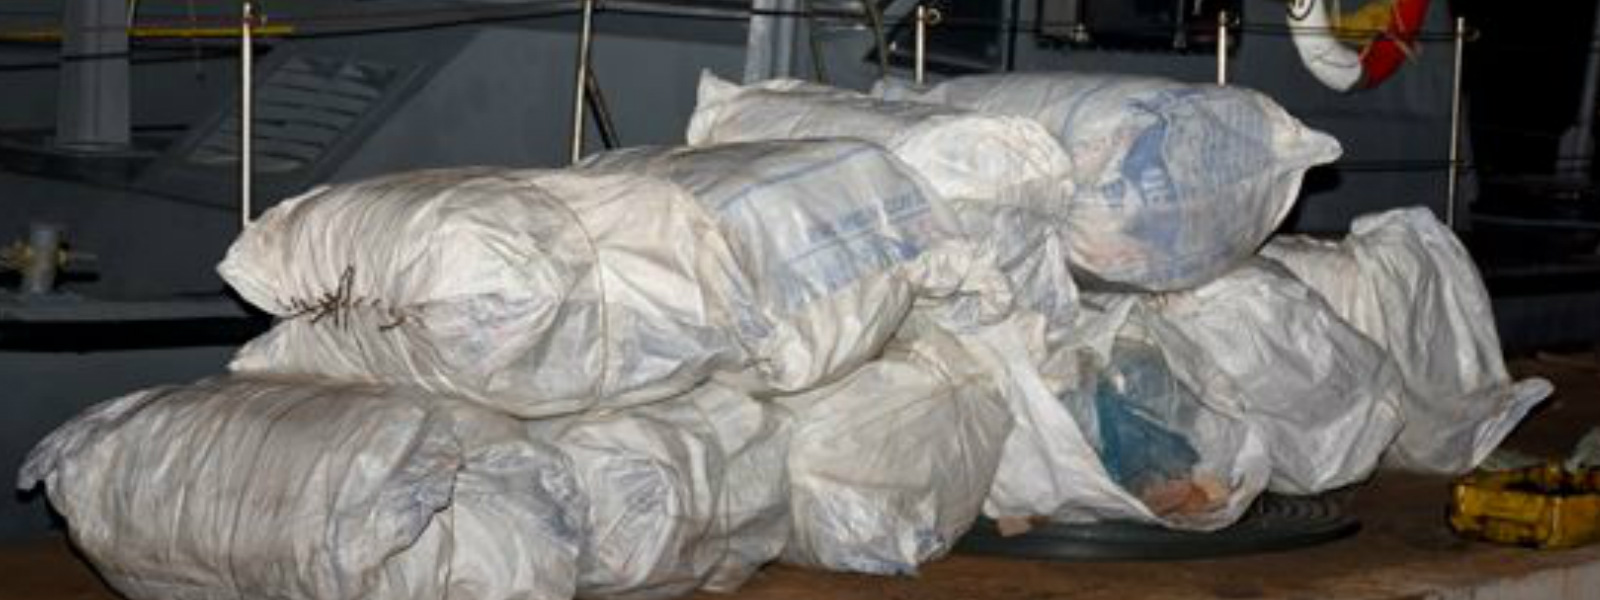 Navy finds 323.4kg of beedi leaves in Pesalai sea